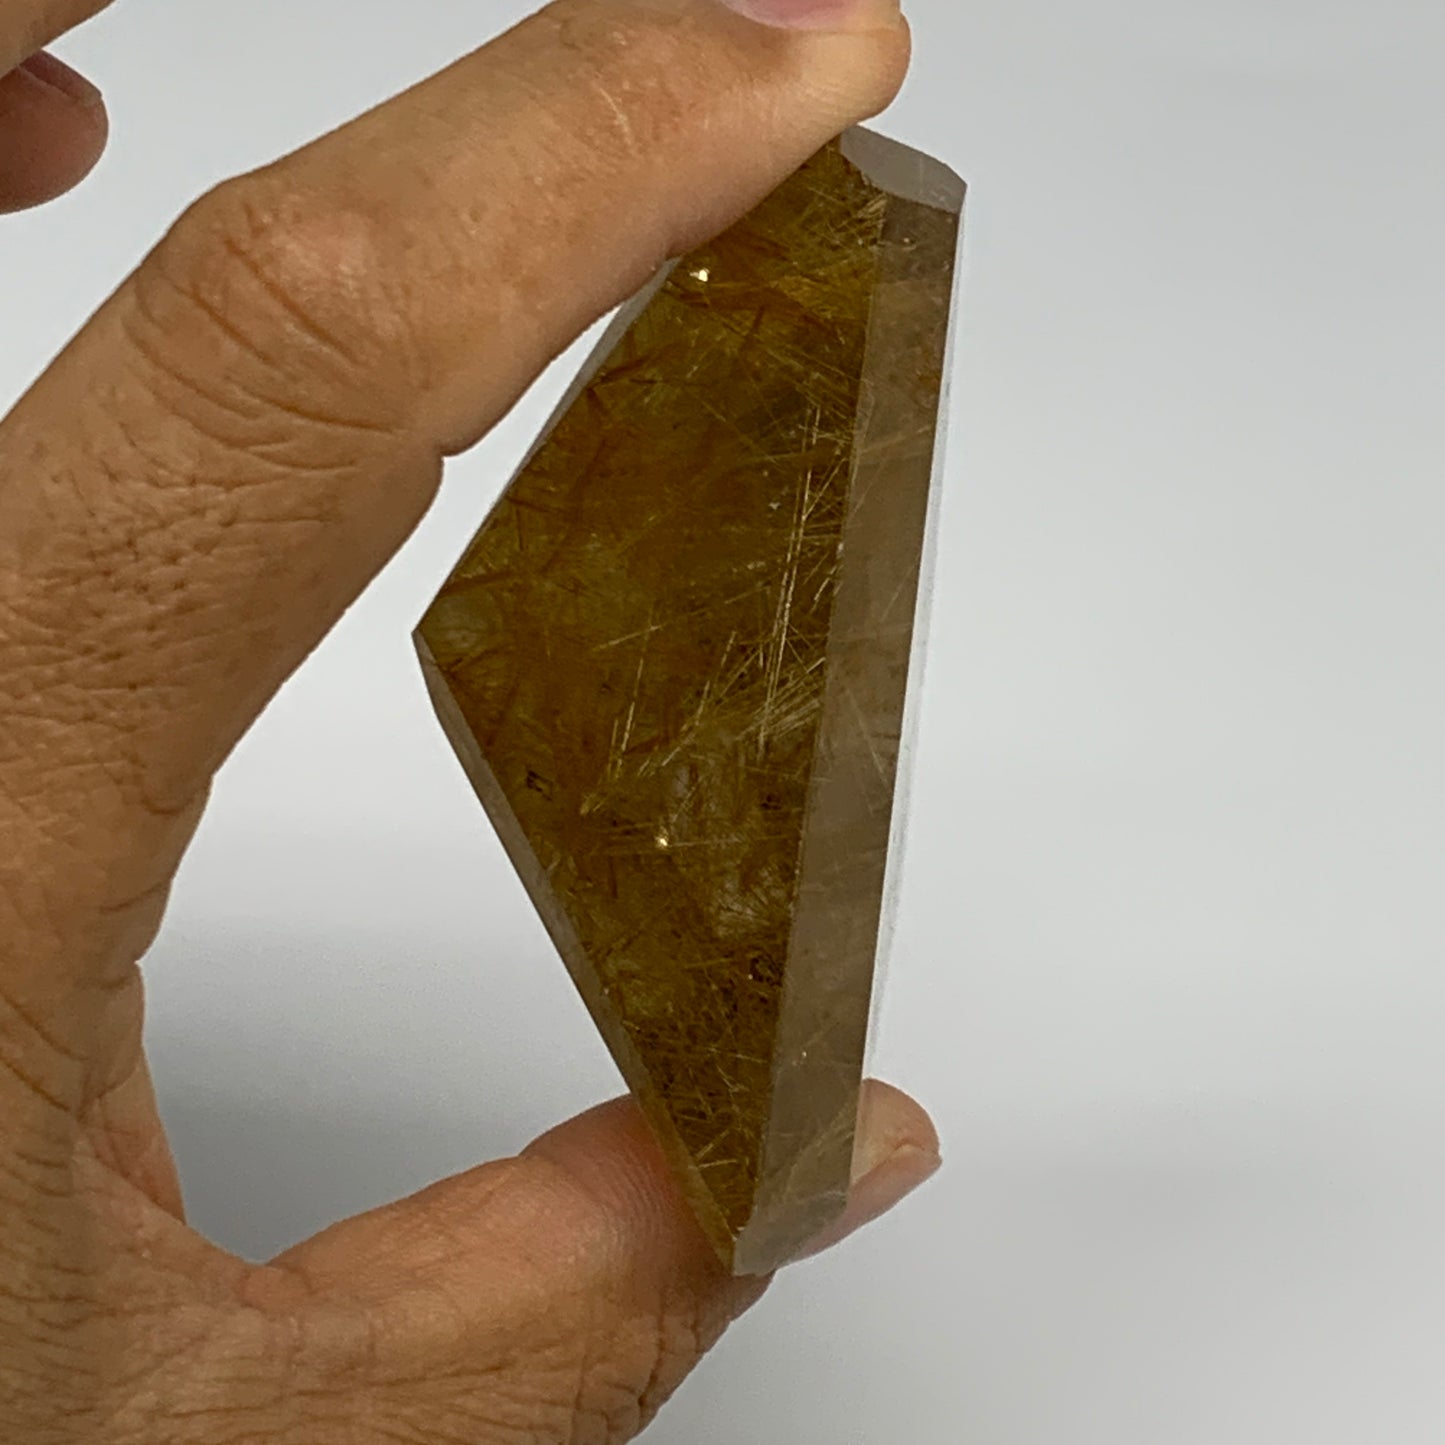 115.4g, 2.7"x2.5"x1.2", Natural Golden Rutile Quartz Crystal Chunk from Brazil,B